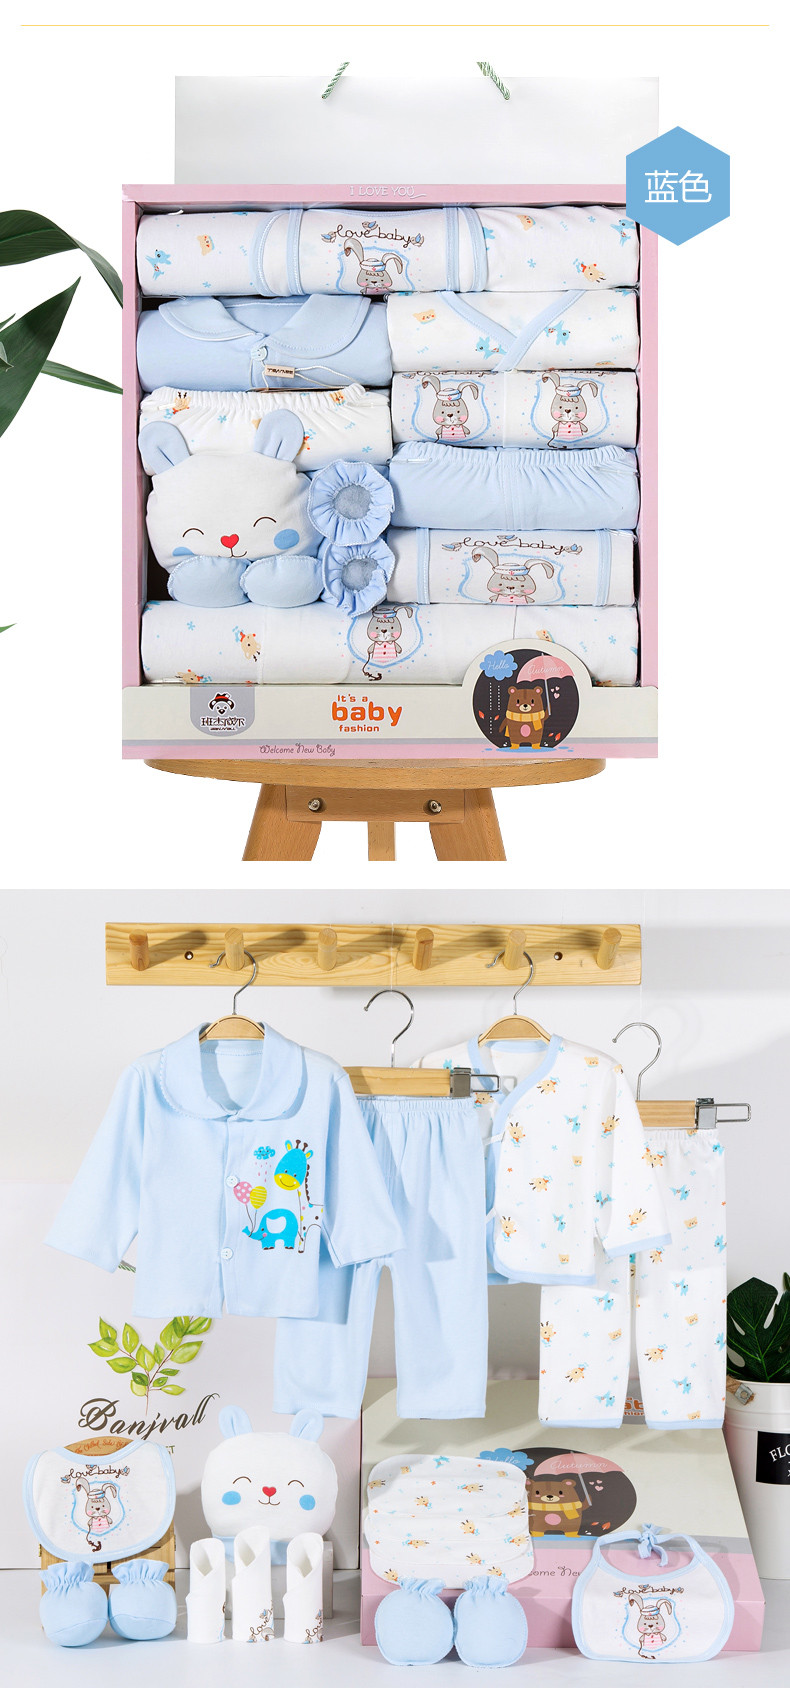 班杰威尔/banjvall 新生儿套装婴儿衣服纯棉刚出生宝宝衣服用品满月礼品婴儿礼盒四季灰小兔系列